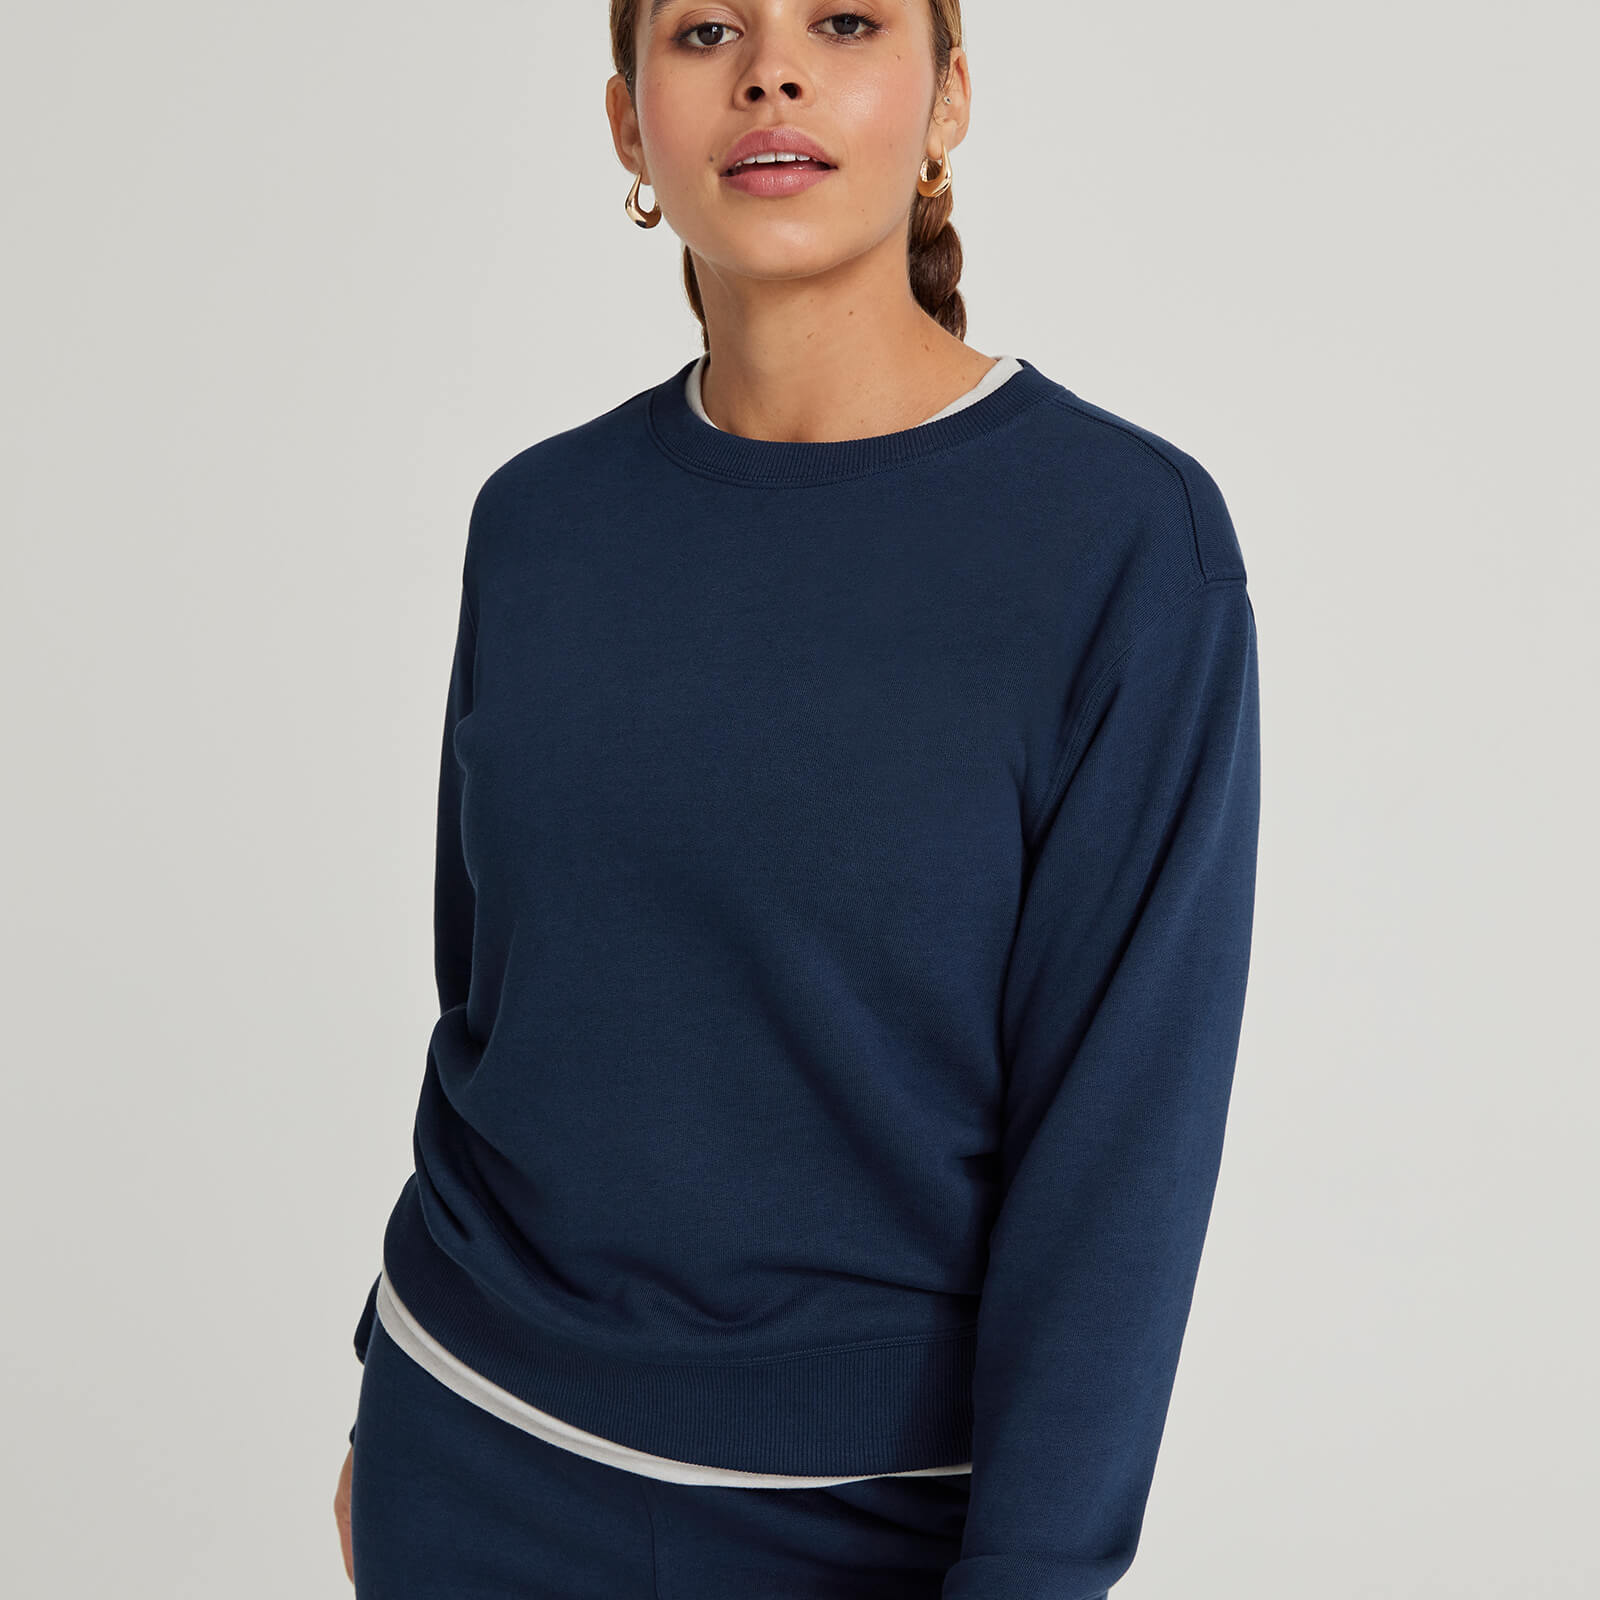 Sweatshirt-Women-Navy-01